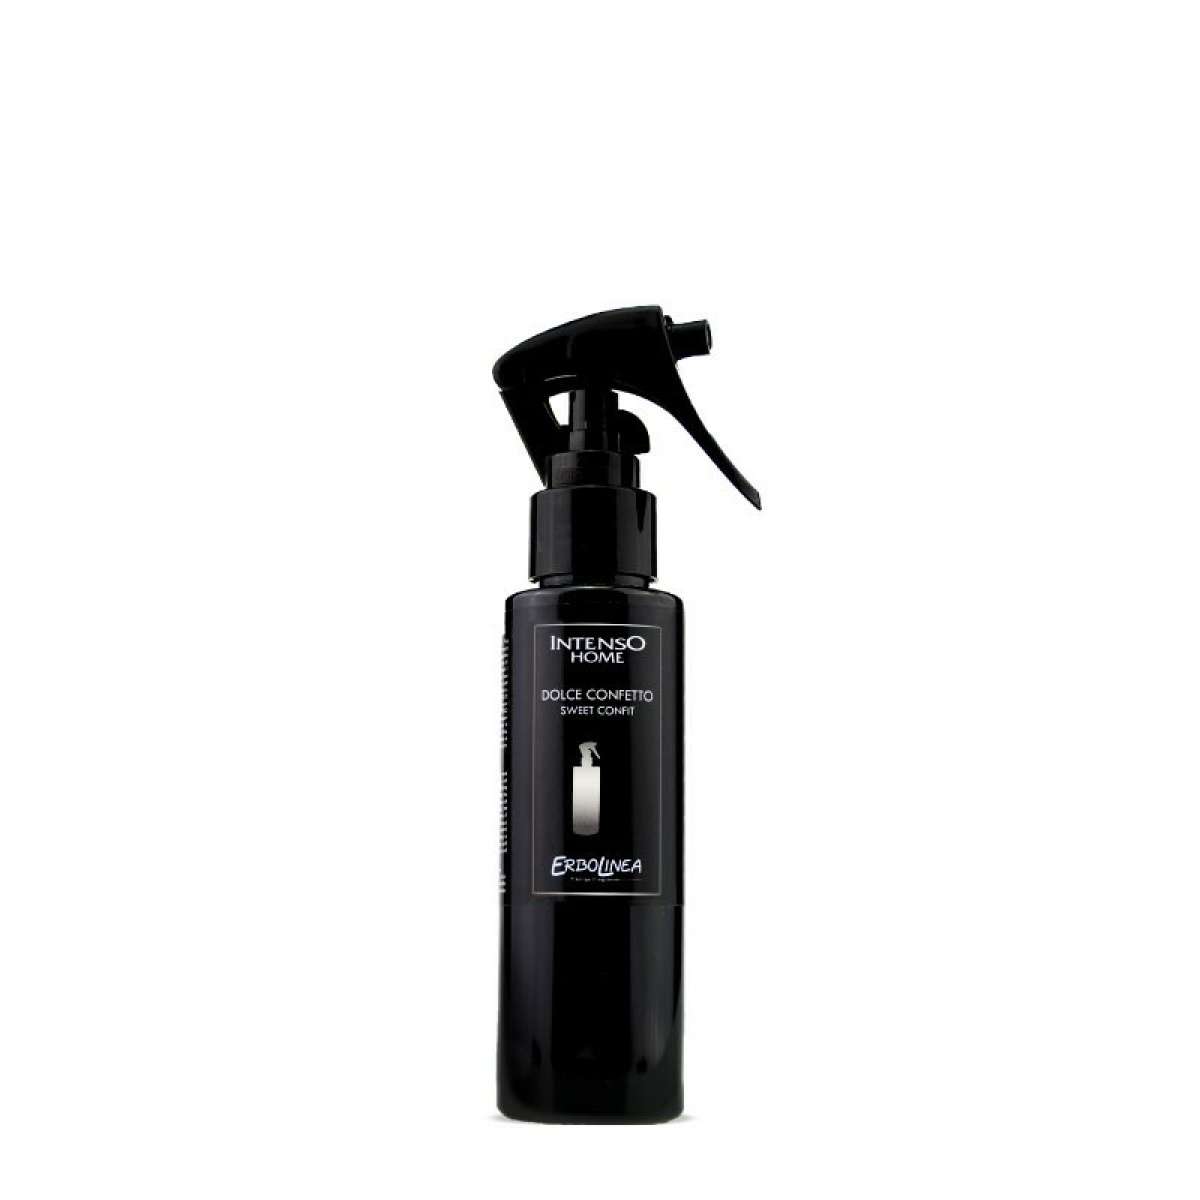 Immagine del prodotto Home Spray per Ambiente Dolce Confetto 100 ml | Erbolinea Prestige